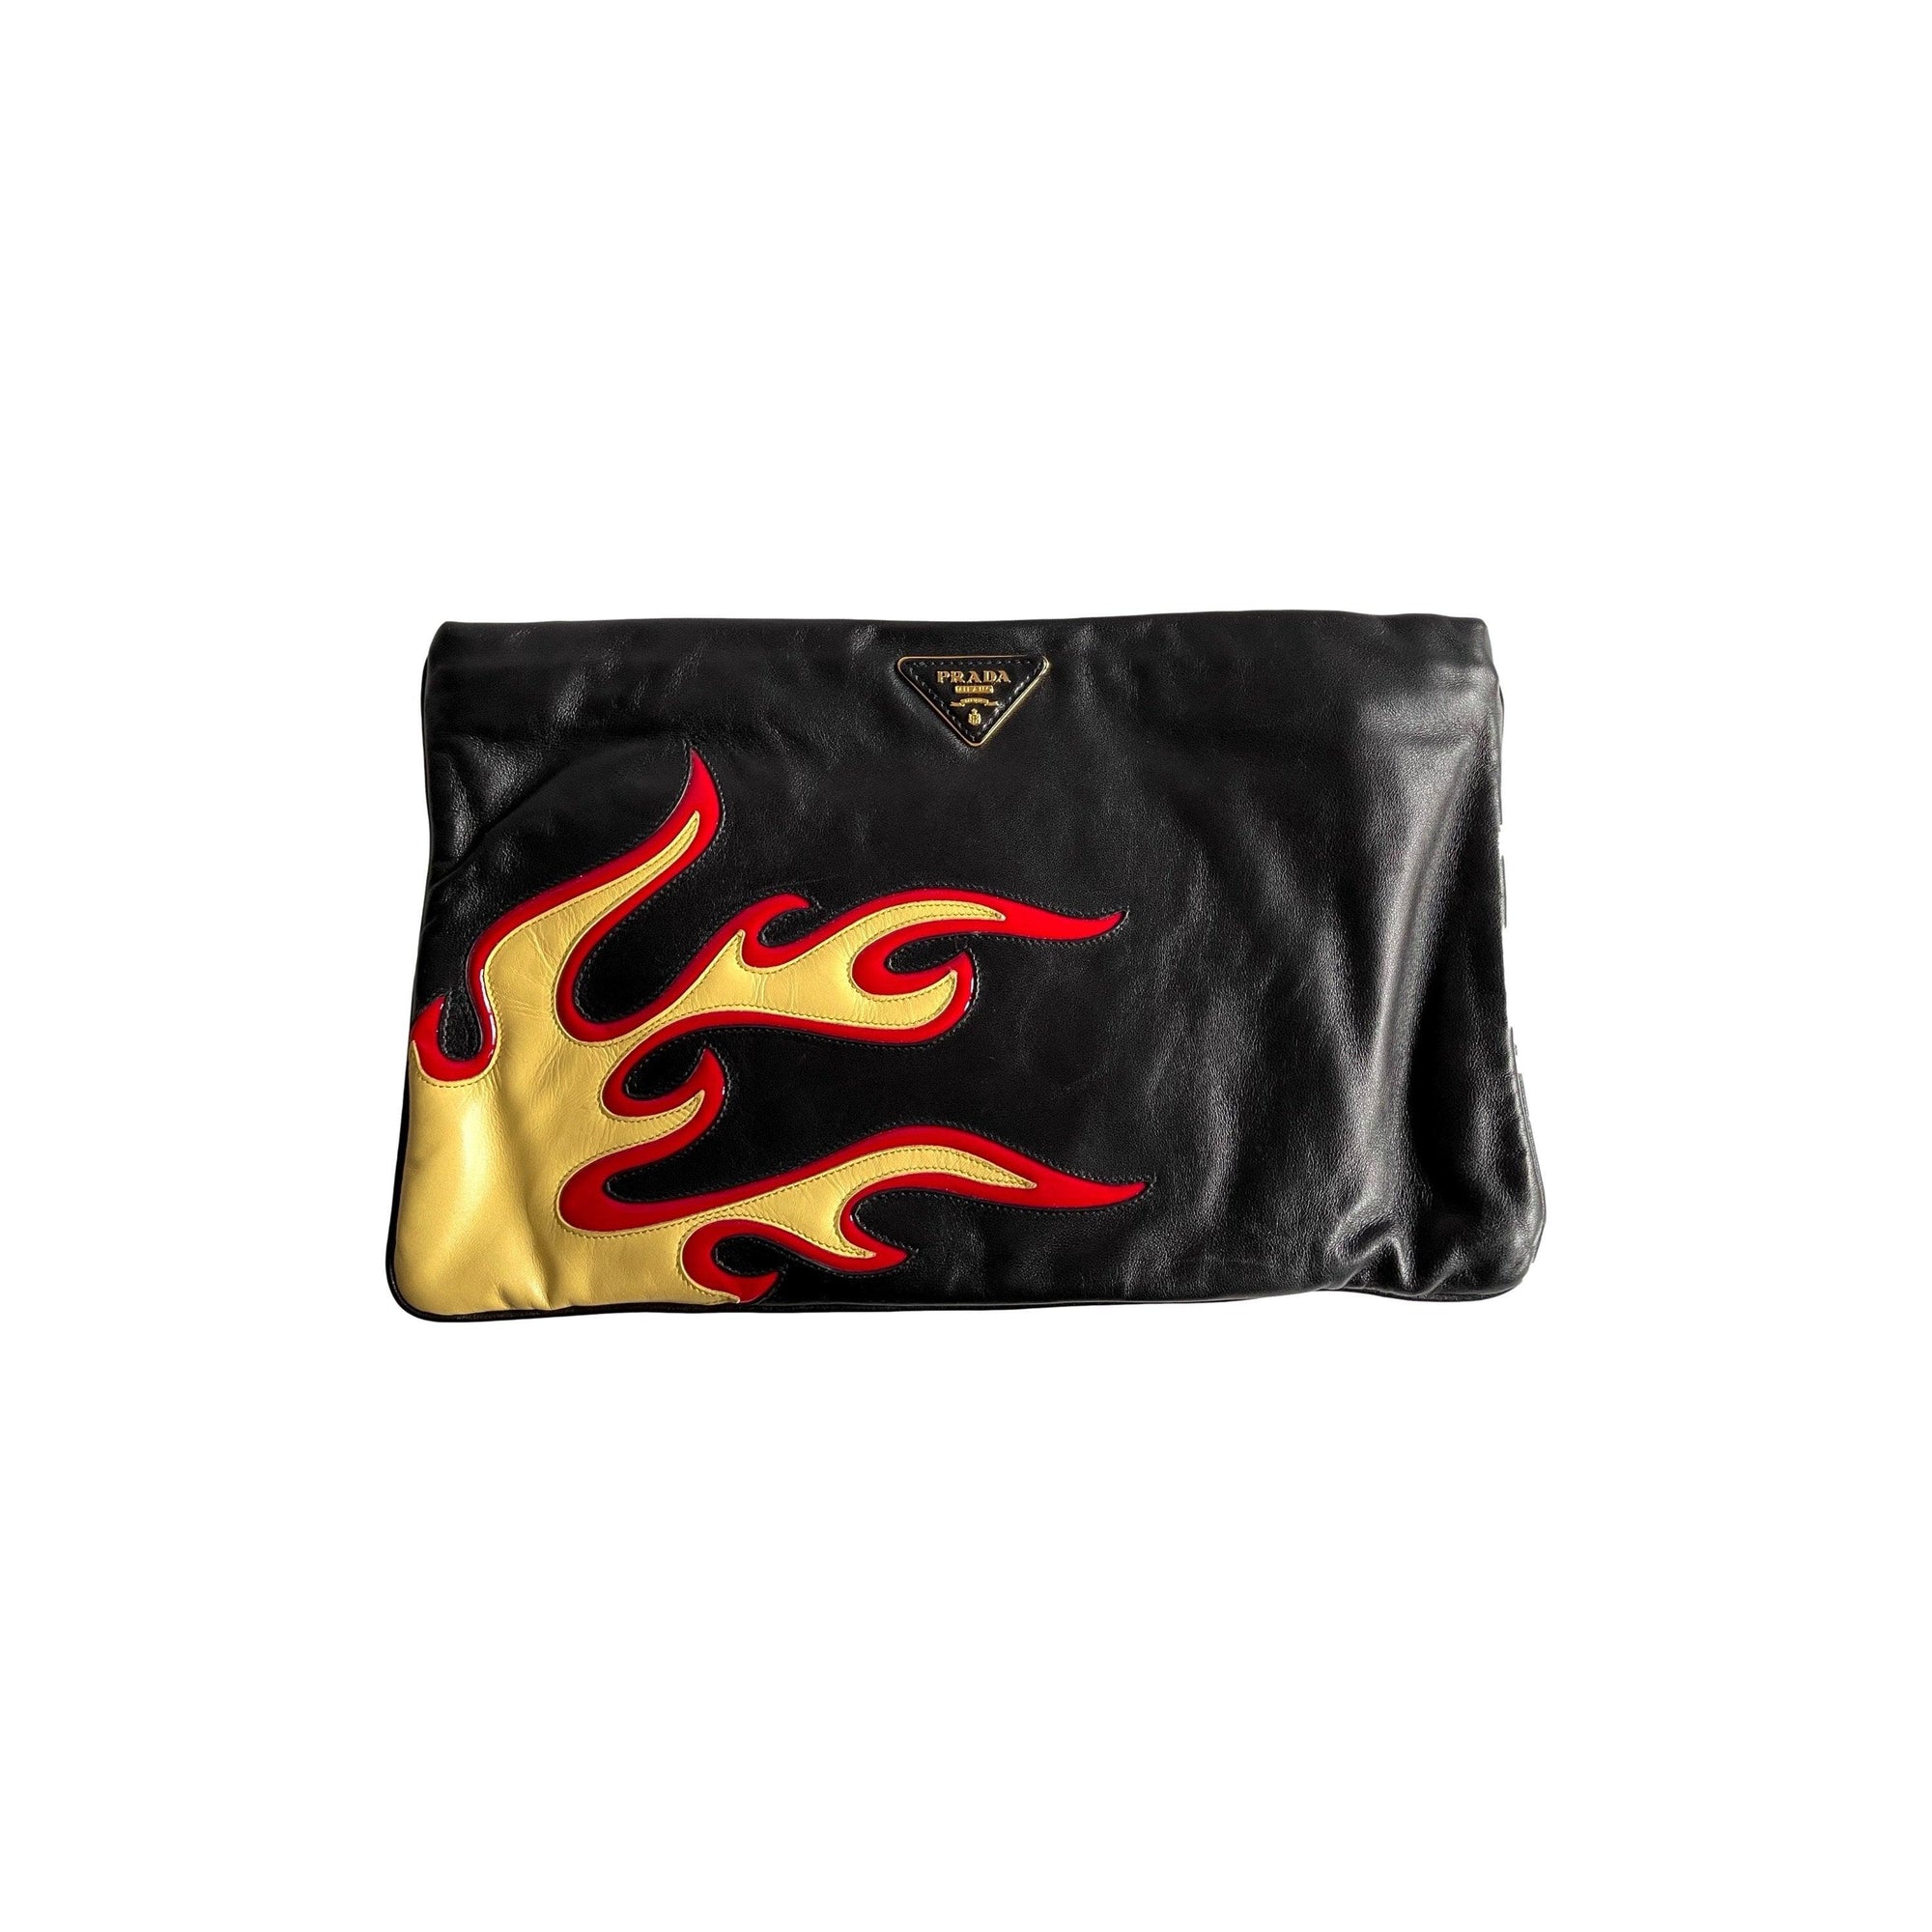 Prada Black Flame Clutch - Accessories